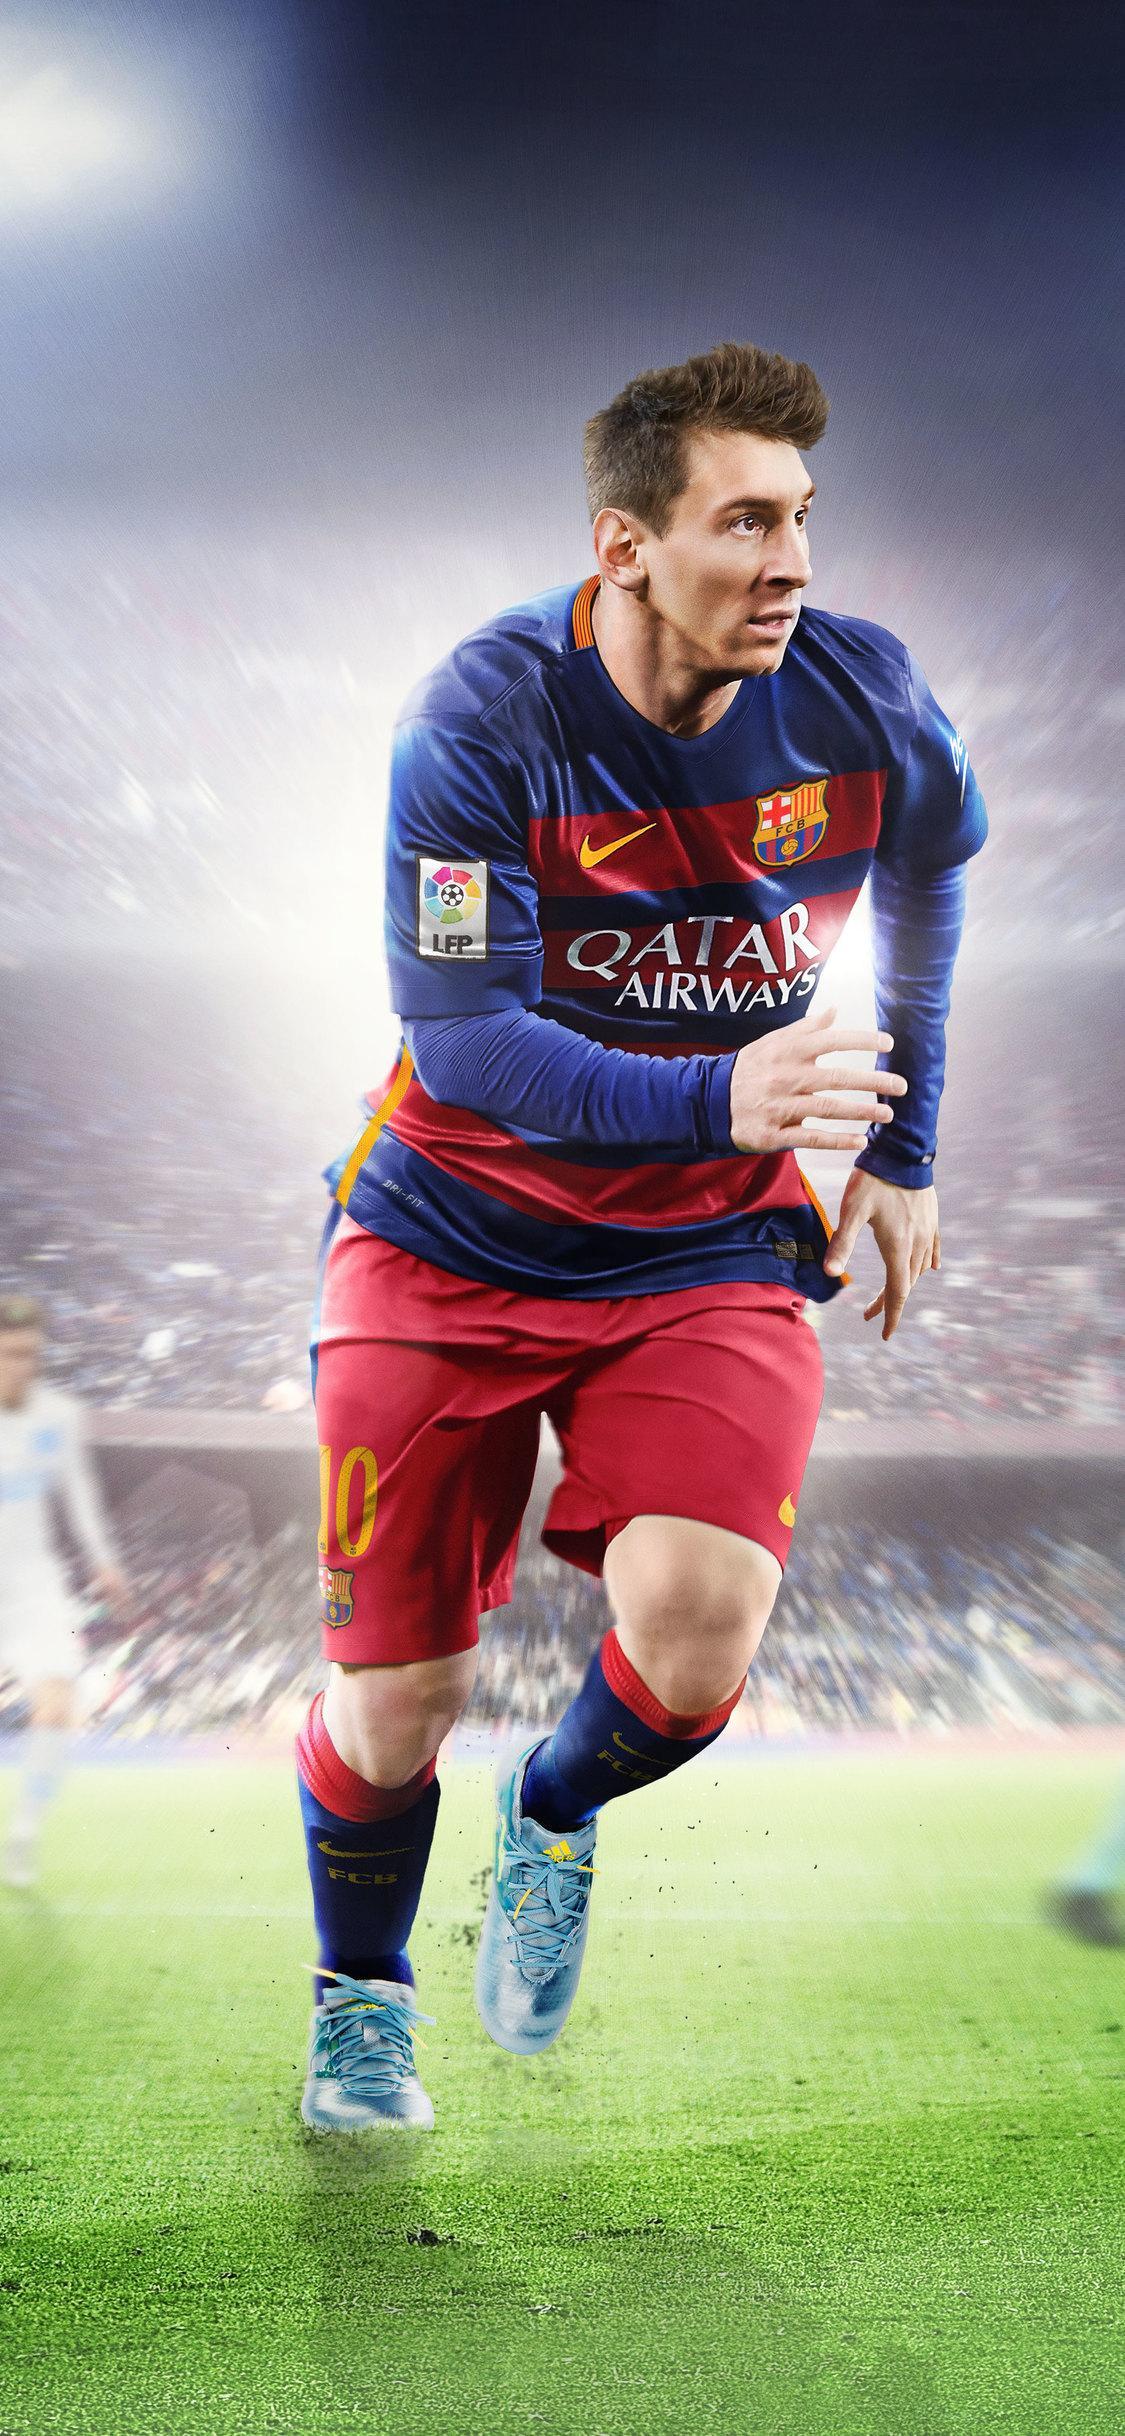 Bạn muốn trải nghiệm tuyệt vời nhất khi chọn hình nền? Hãy tải xuống hình nền Messi 8K đặc biệt này và tận hưởng chất lượng hình ảnh tuyệt vời nhất. Màn hình của bạn sẽ trở nên sống động và sắc nét hơn bao giờ hết, đồng thời thể hiện tình yêu của bạn với cầu thủ vĩ đại này.